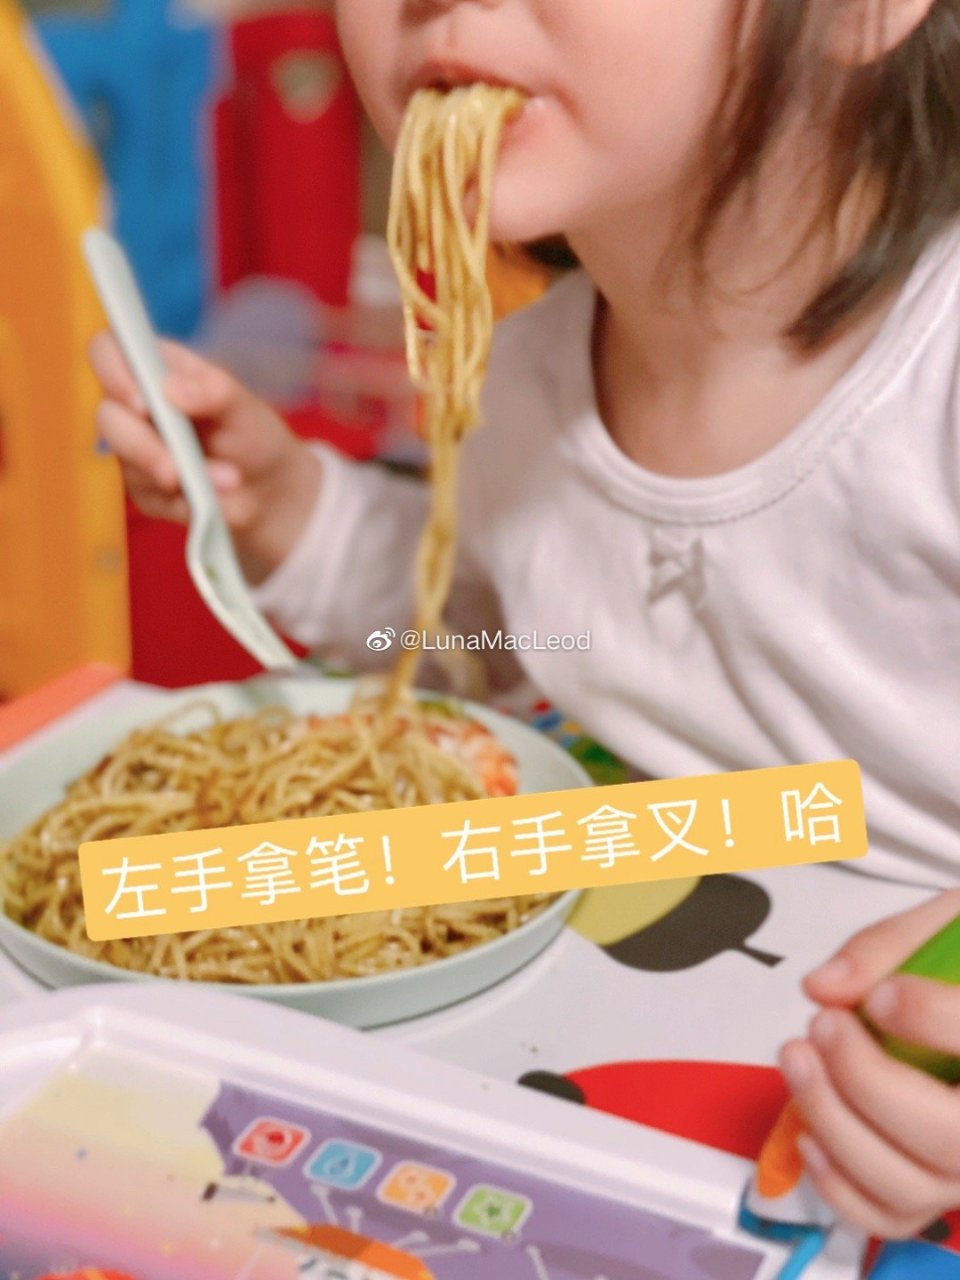 #儿童晚餐食谱# 【芝士虾意面】...